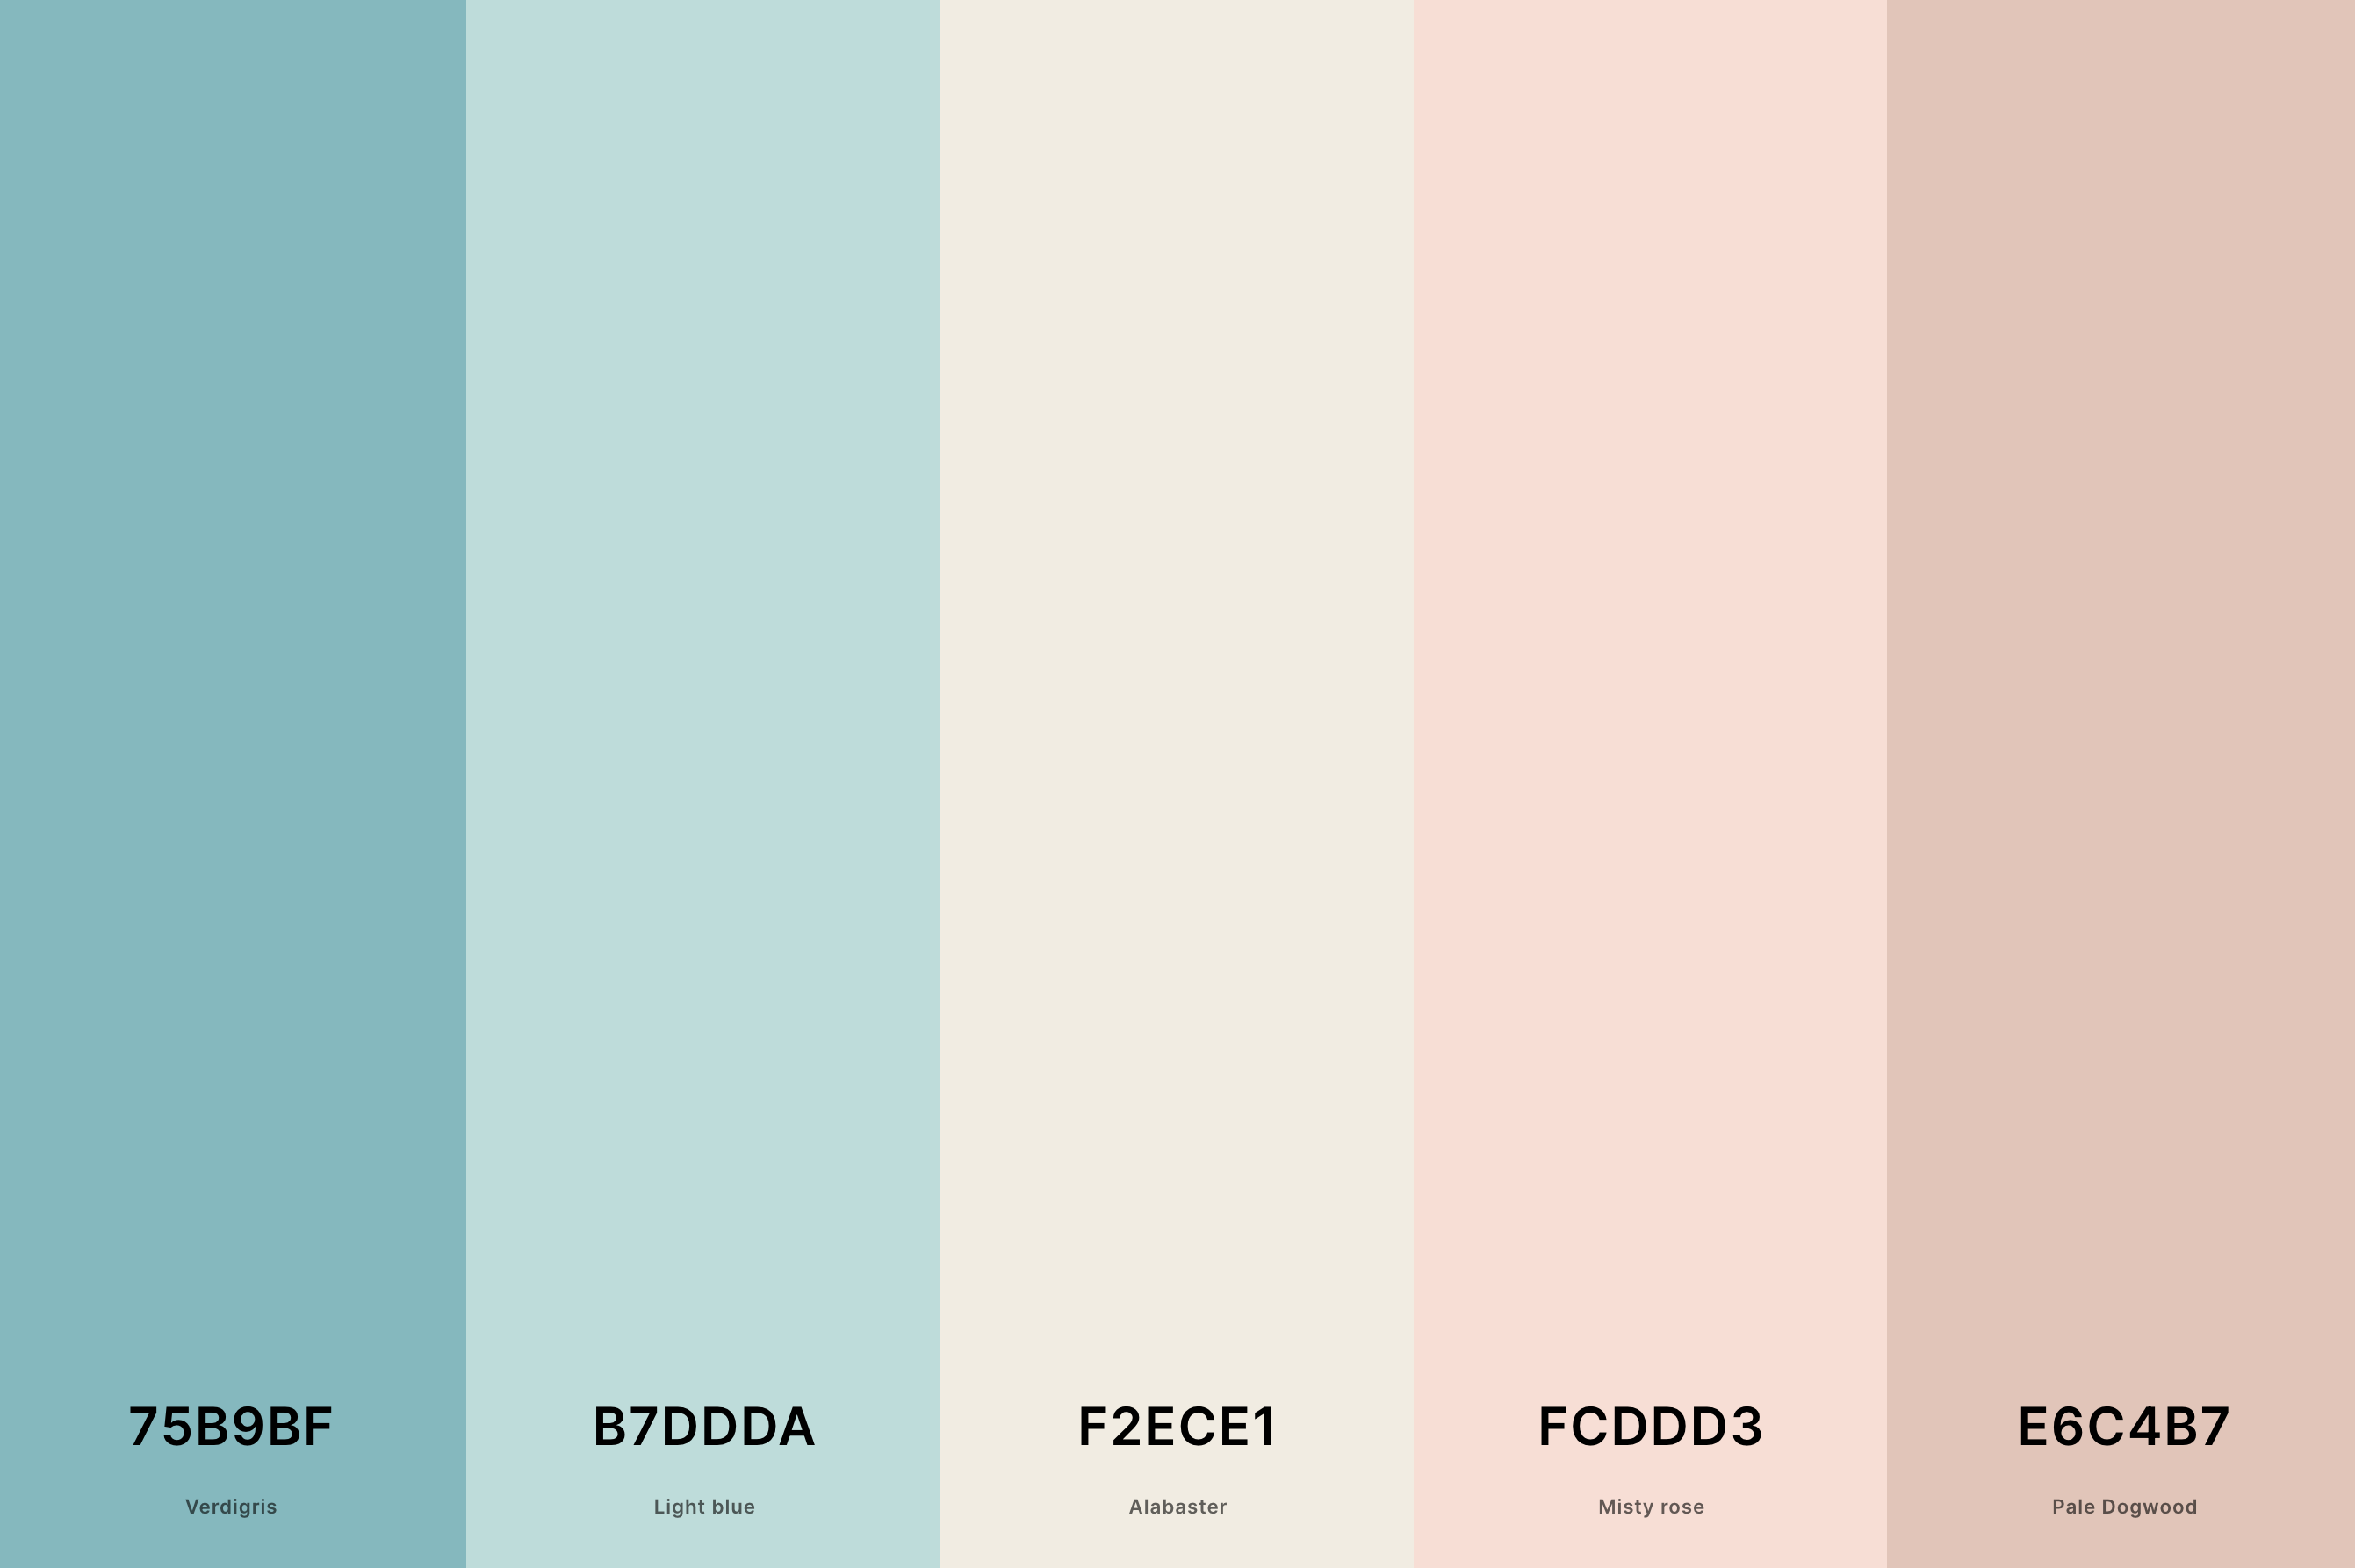 17. Aesthetic Natural Color Palette Color Palette with Verdigris (Hex #75B9BF) + Light Blue (Hex #B7DDDA) + Alabaster (Hex #F2ECE1) + Misty Rose (Hex #FCDDD3) + Pale Dogwood (Hex #E6C4B7) Color Palette with Hex Codes